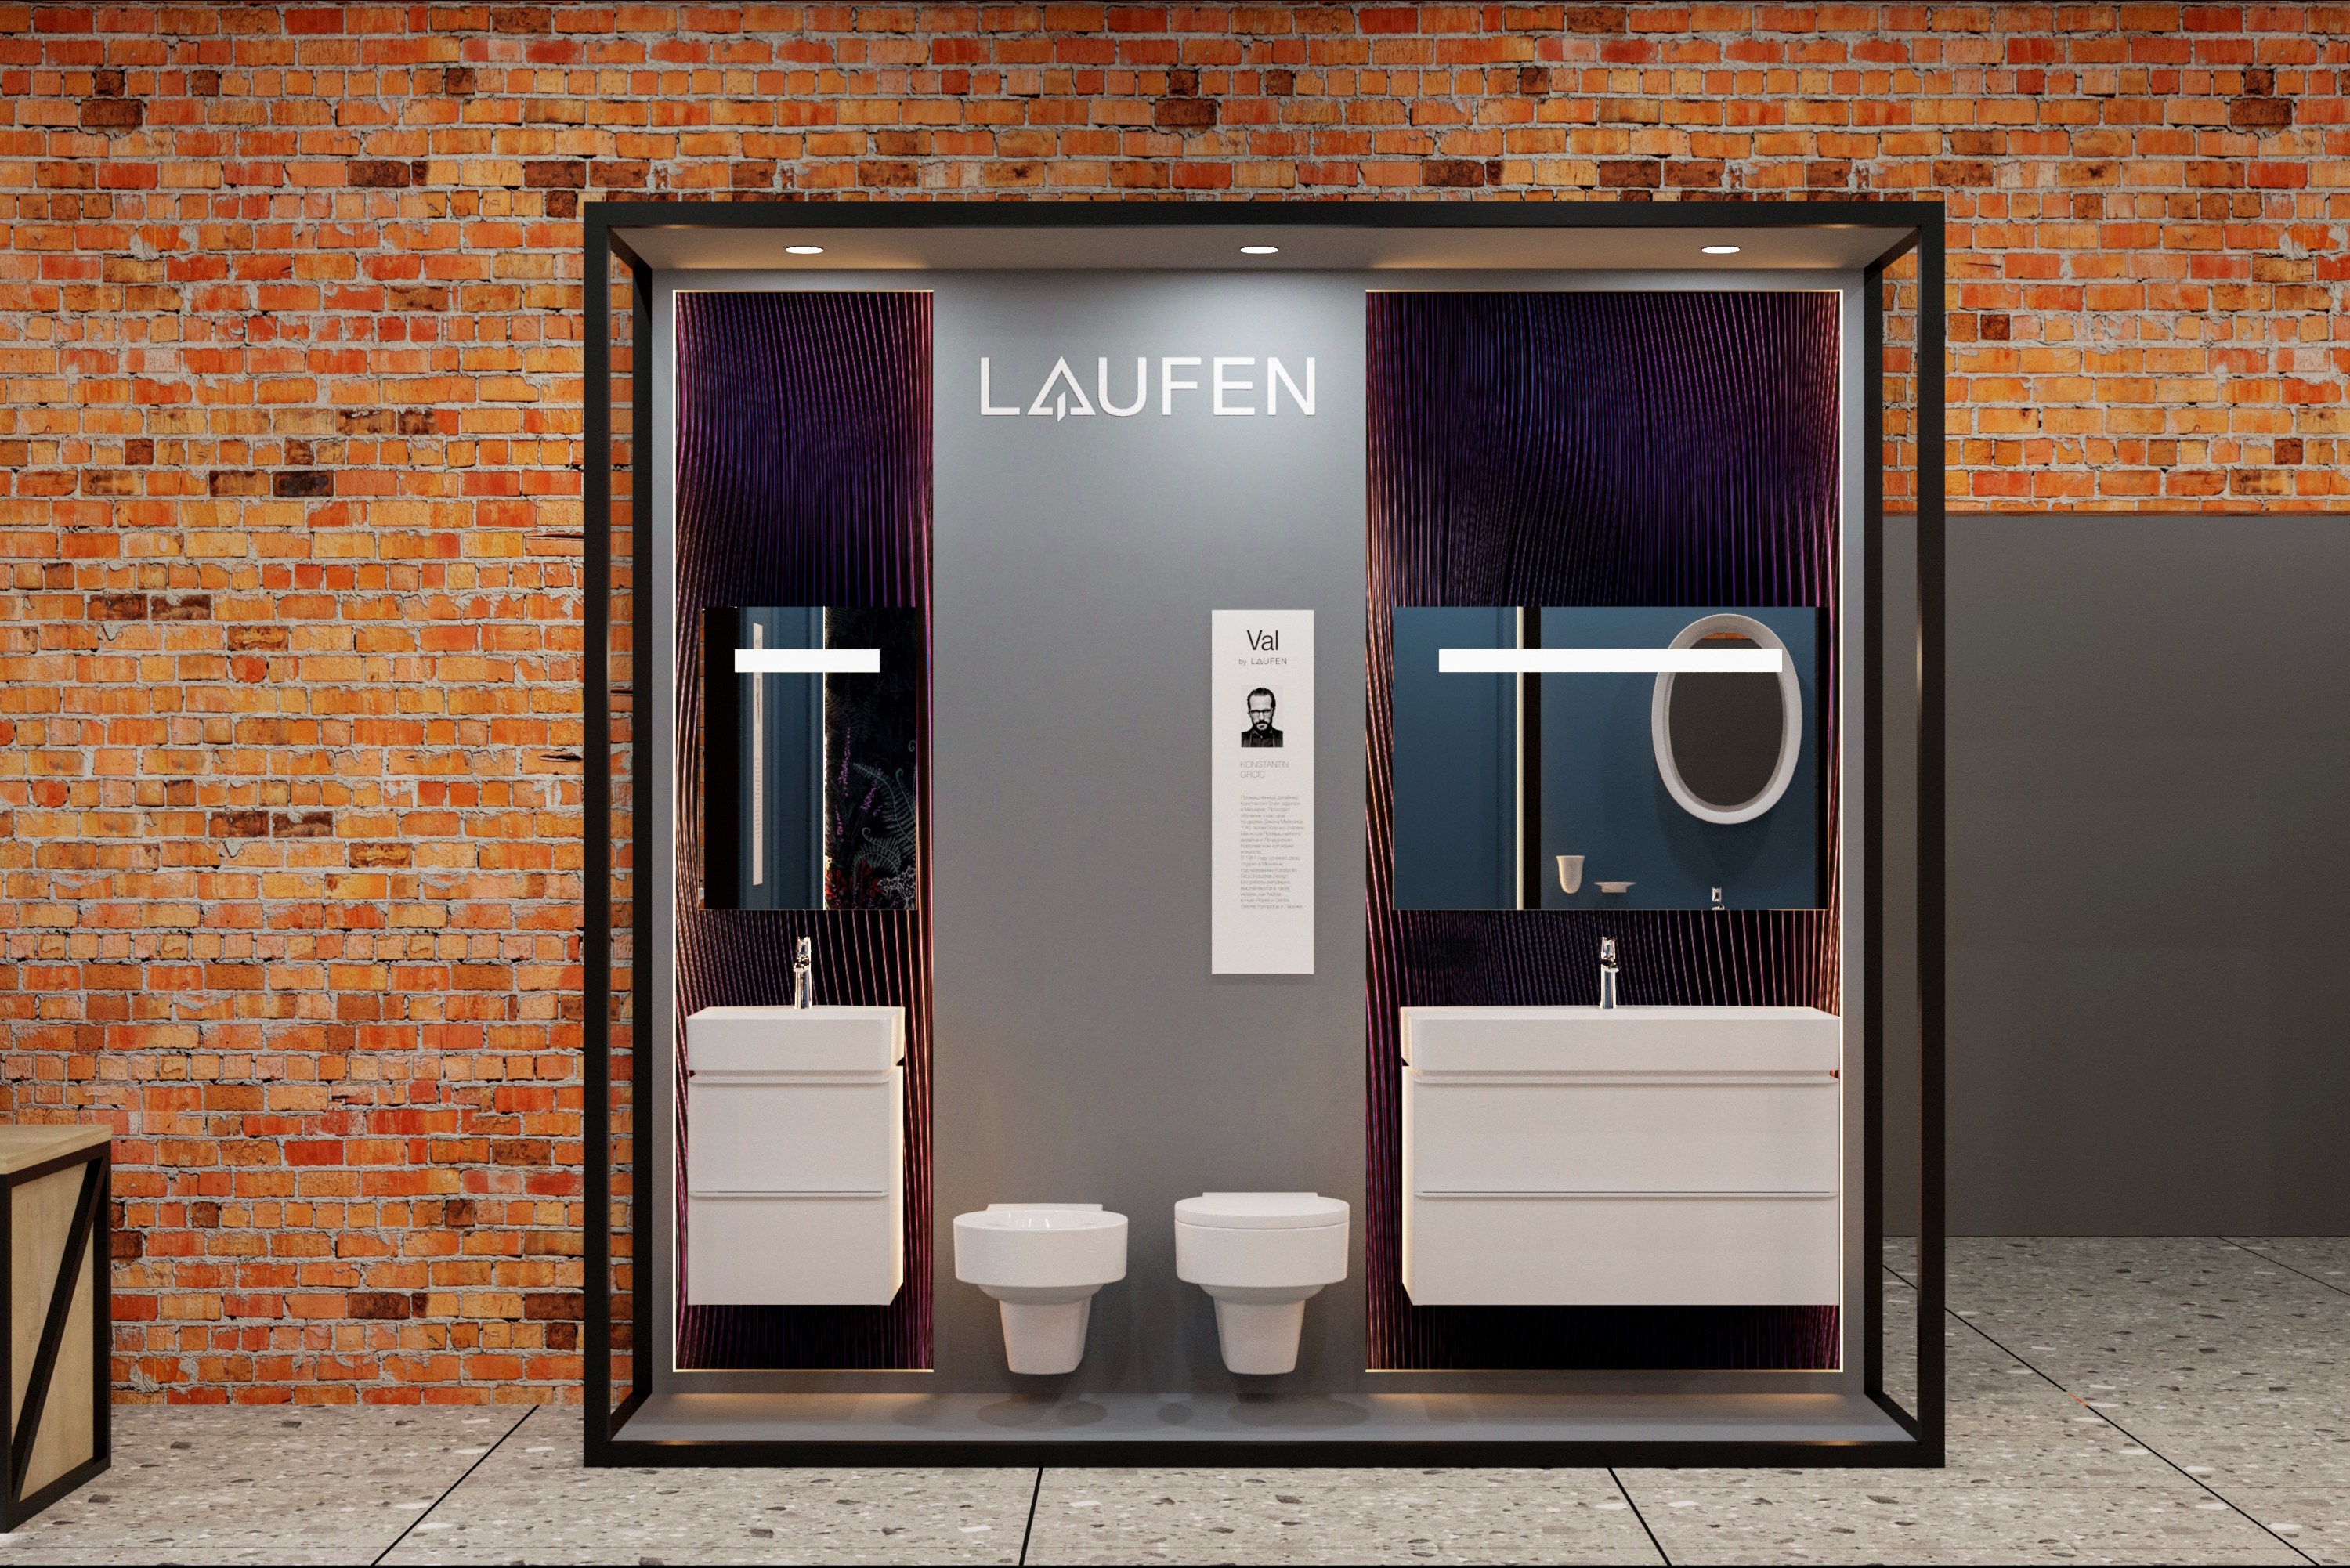 Дизайн интерьера бутика Laufen в Decorroom 2 - zakriart